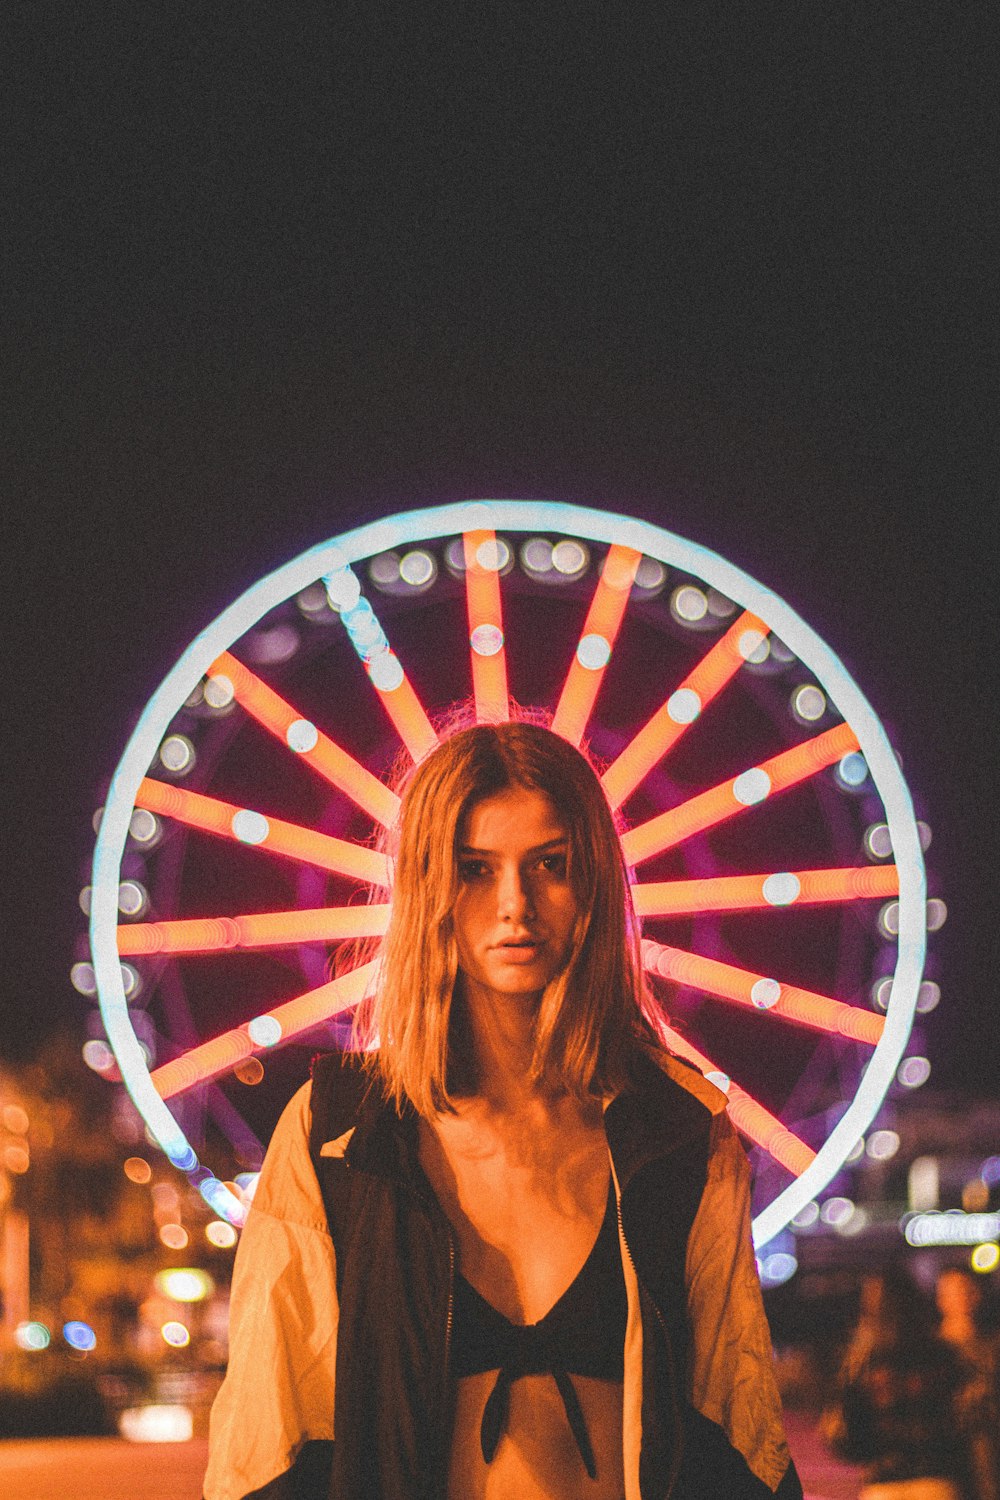 mulher em pé na frente da roda-gigante iluminada durante a noite